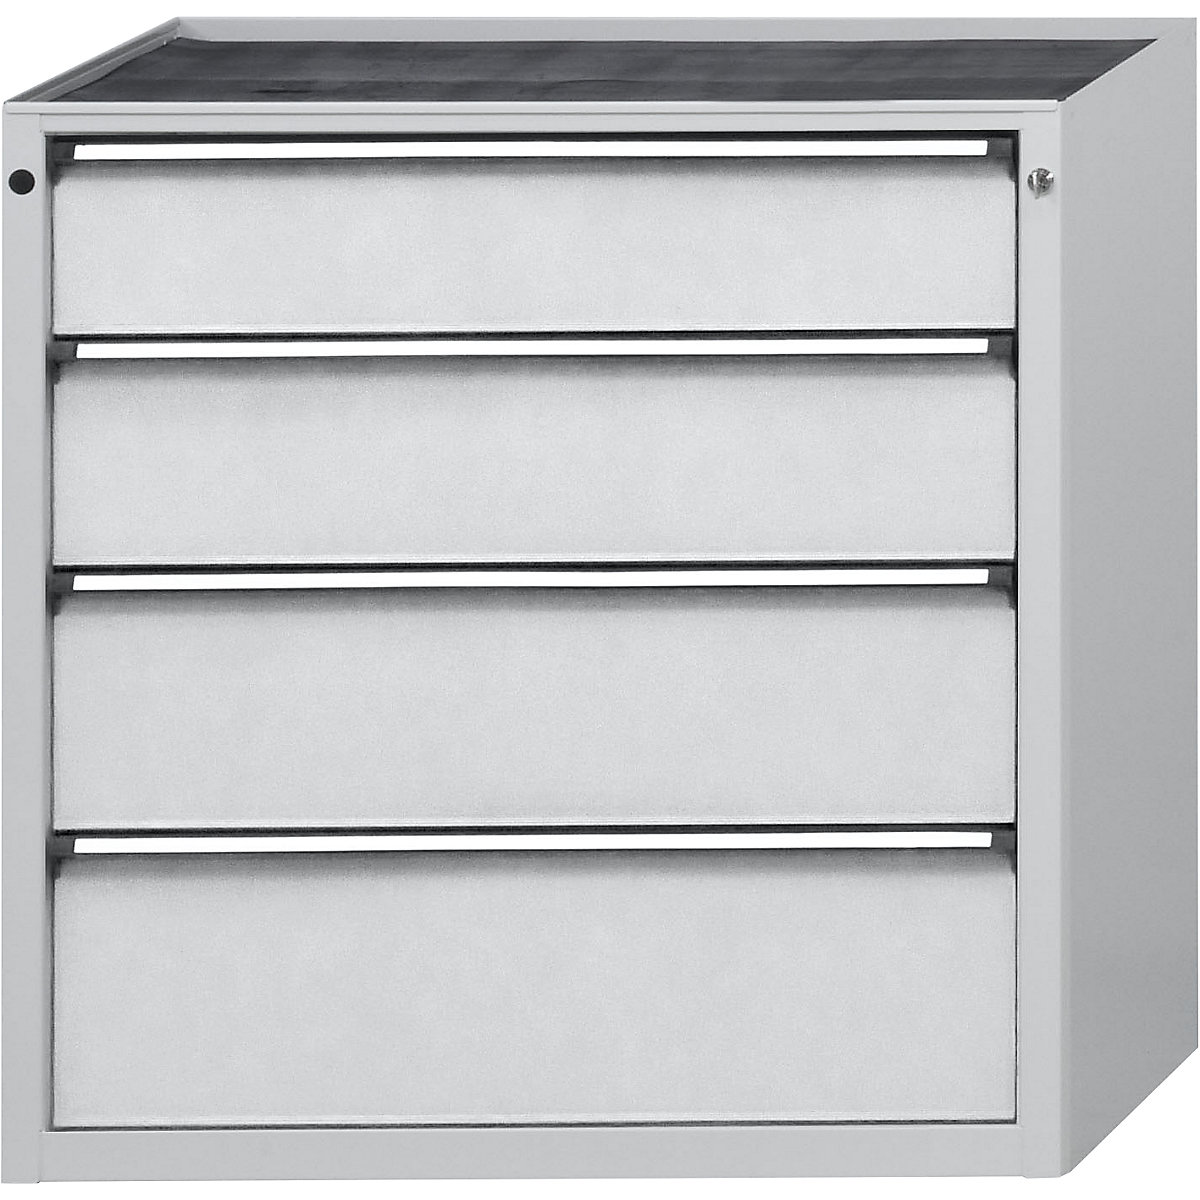 Armoire à tiroirs – ANKE, l x p 910 x 675 mm, charge max. tiroirs 200 kg, 4 tiroirs, hauteur 980 mm, façade gris clair-14